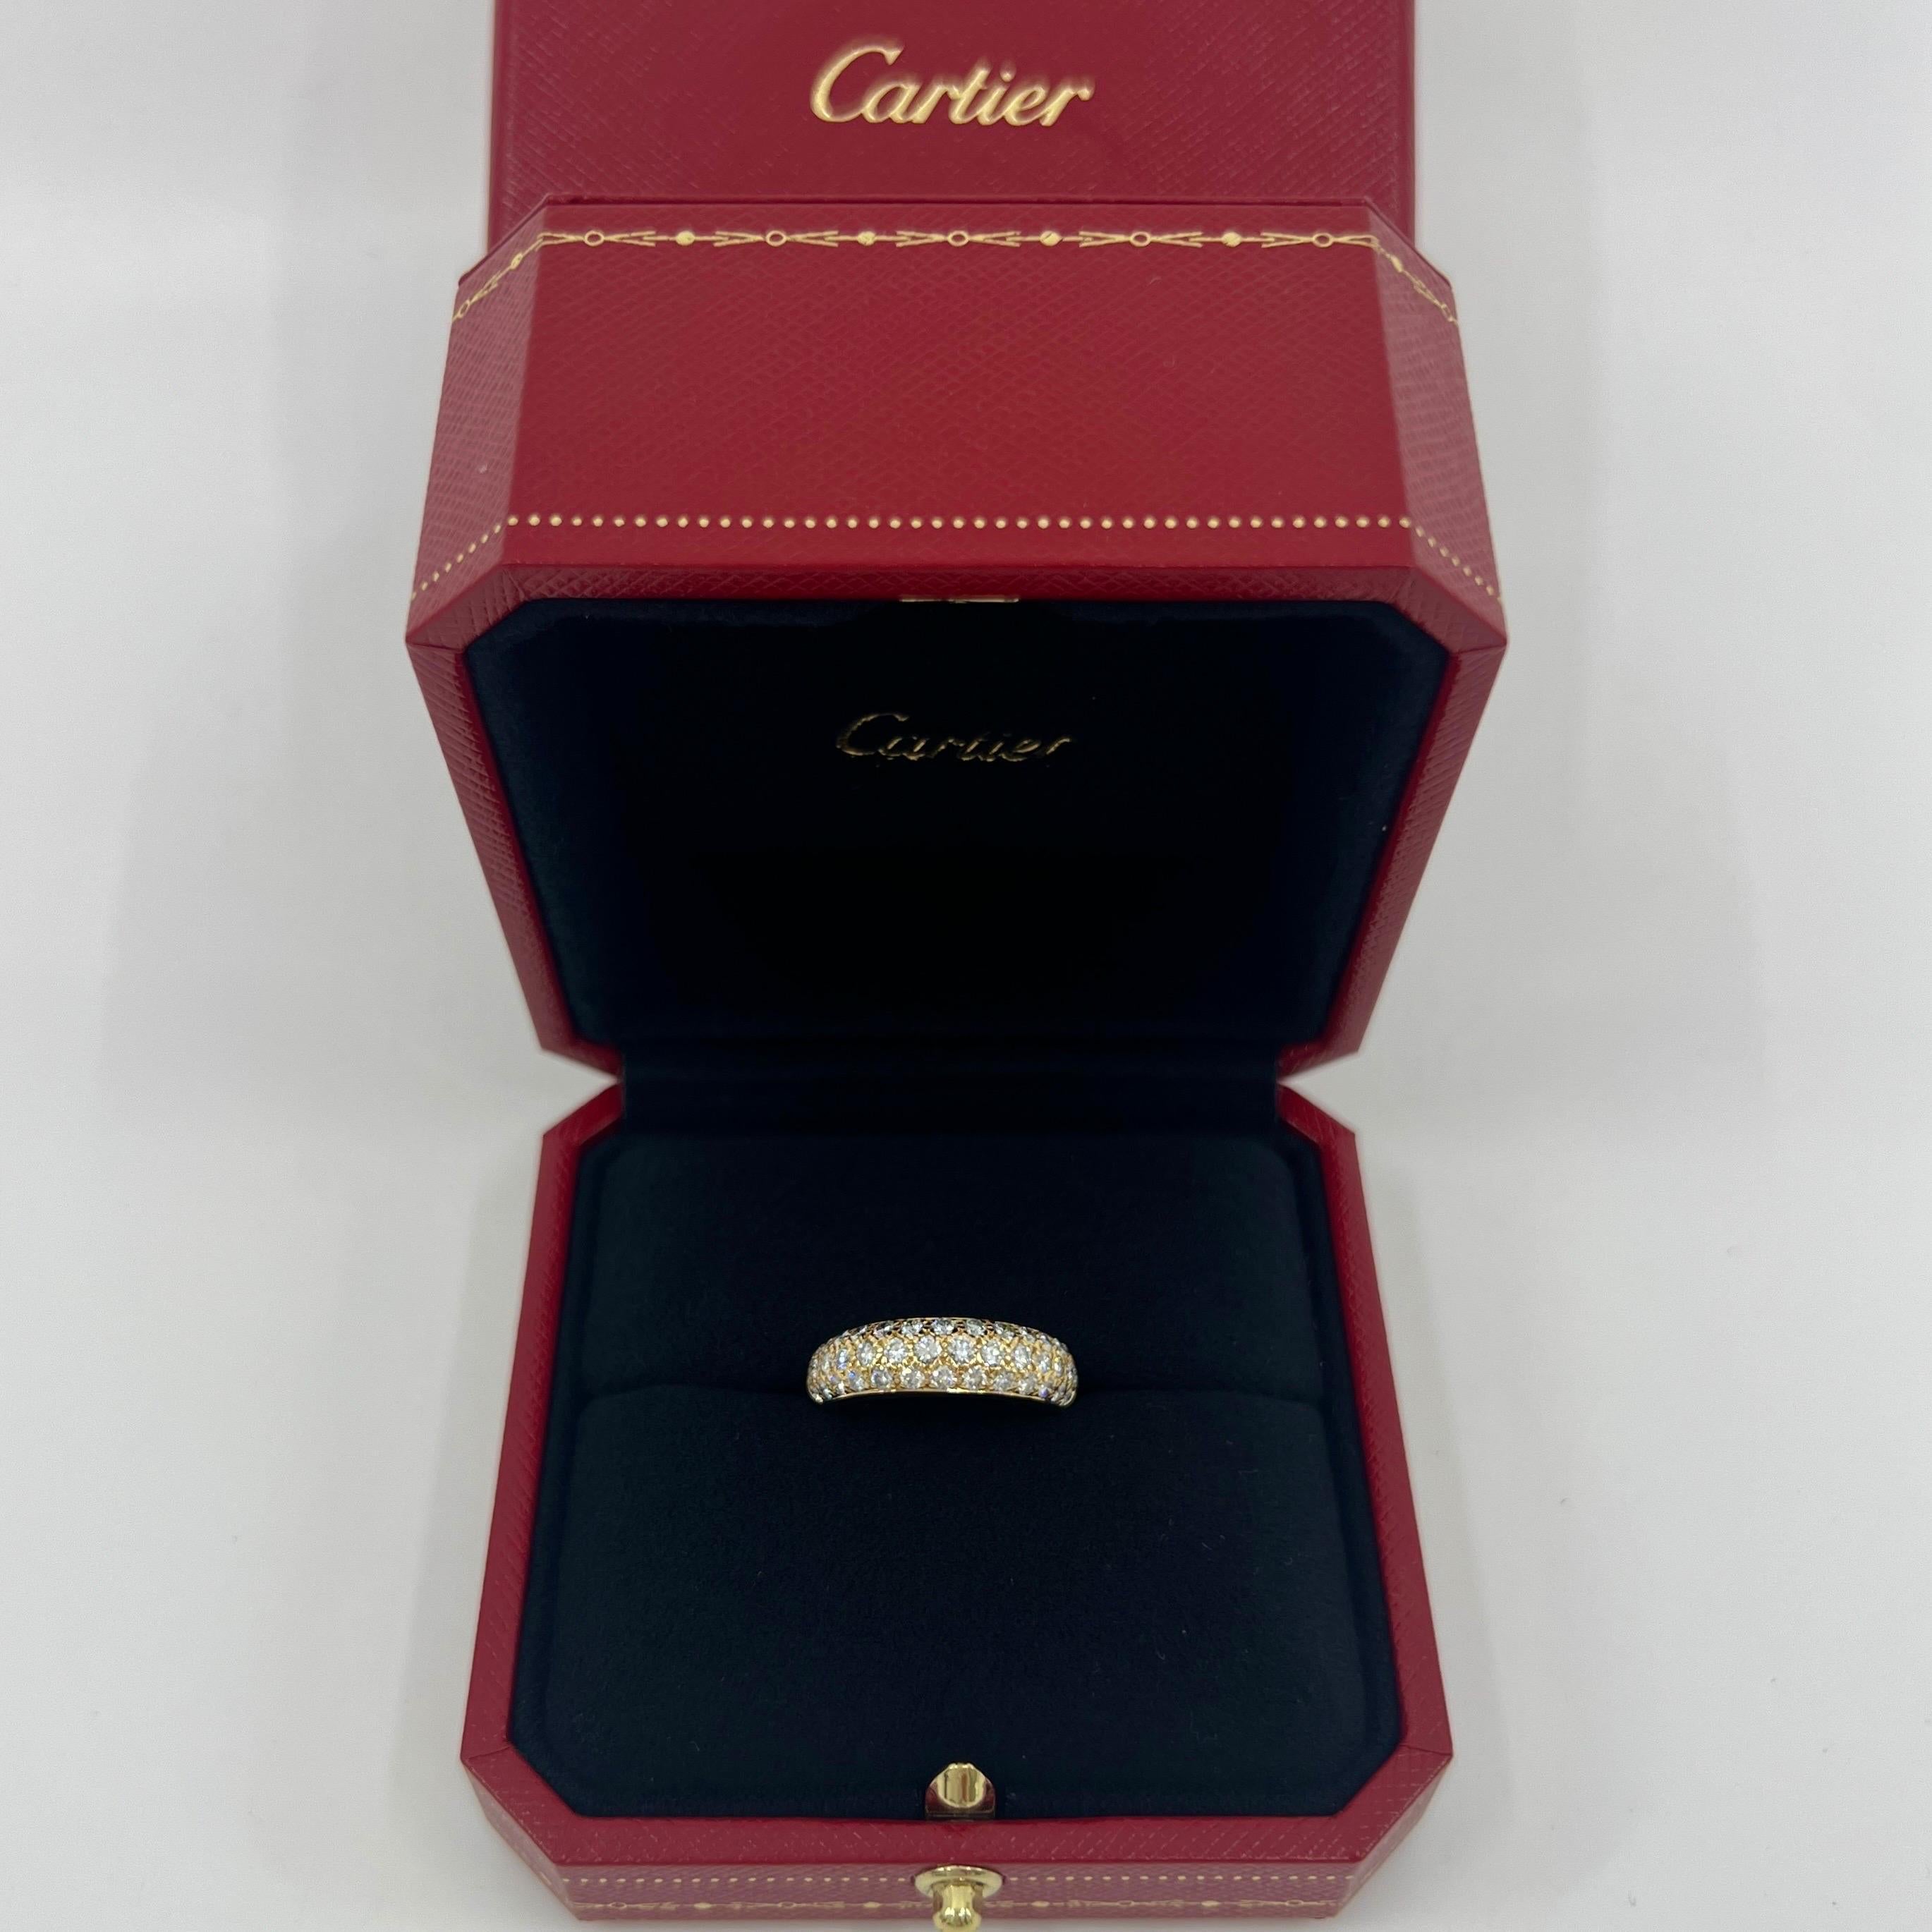 Rare bague vintage en or jaune 18k à pavé de diamants de Cartier.

Cette magnifique bague de Cartier présente un dôme incurvé avec trois rangées de diamants pavés joliment sertis qui font la moitié du tour de l'anneau.

Les diamants sont